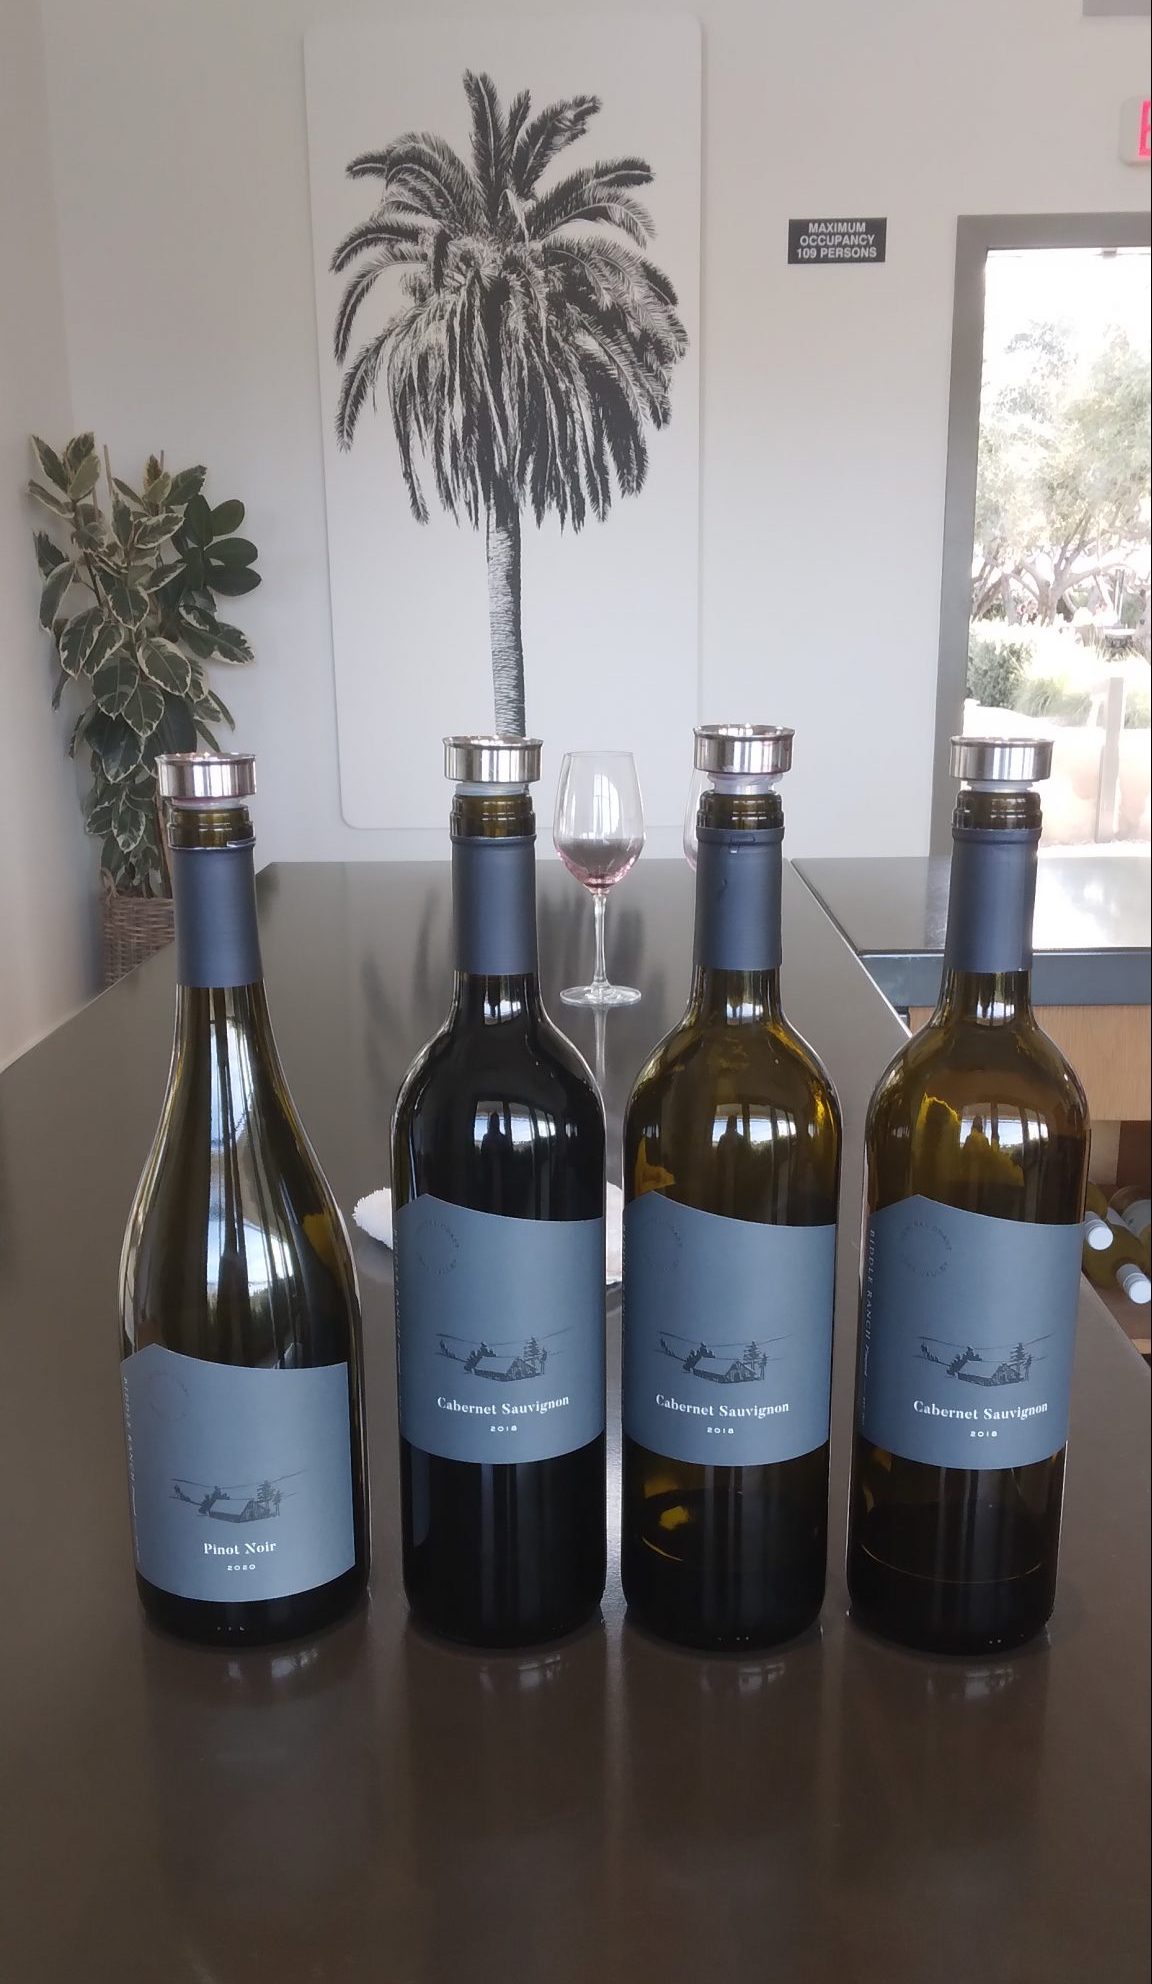 Biddle Ranch Vineyard wine bottles lined up on bar